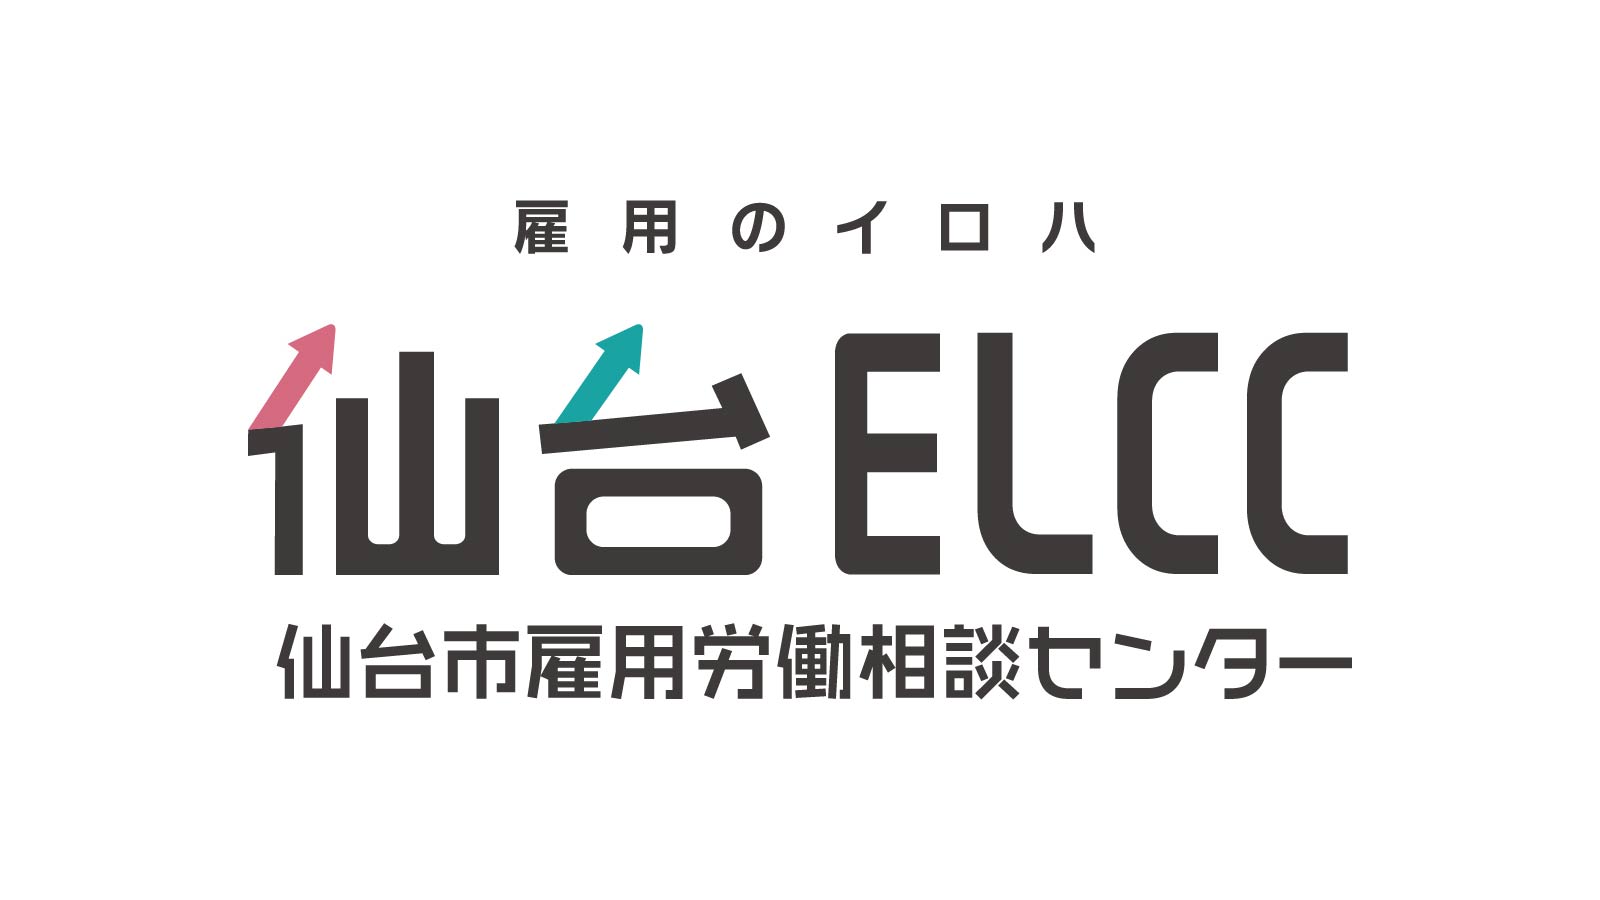 仙台ELCC 主催セミナー 「勤務間インターバル制度」の効果と制度導入のための労務管理